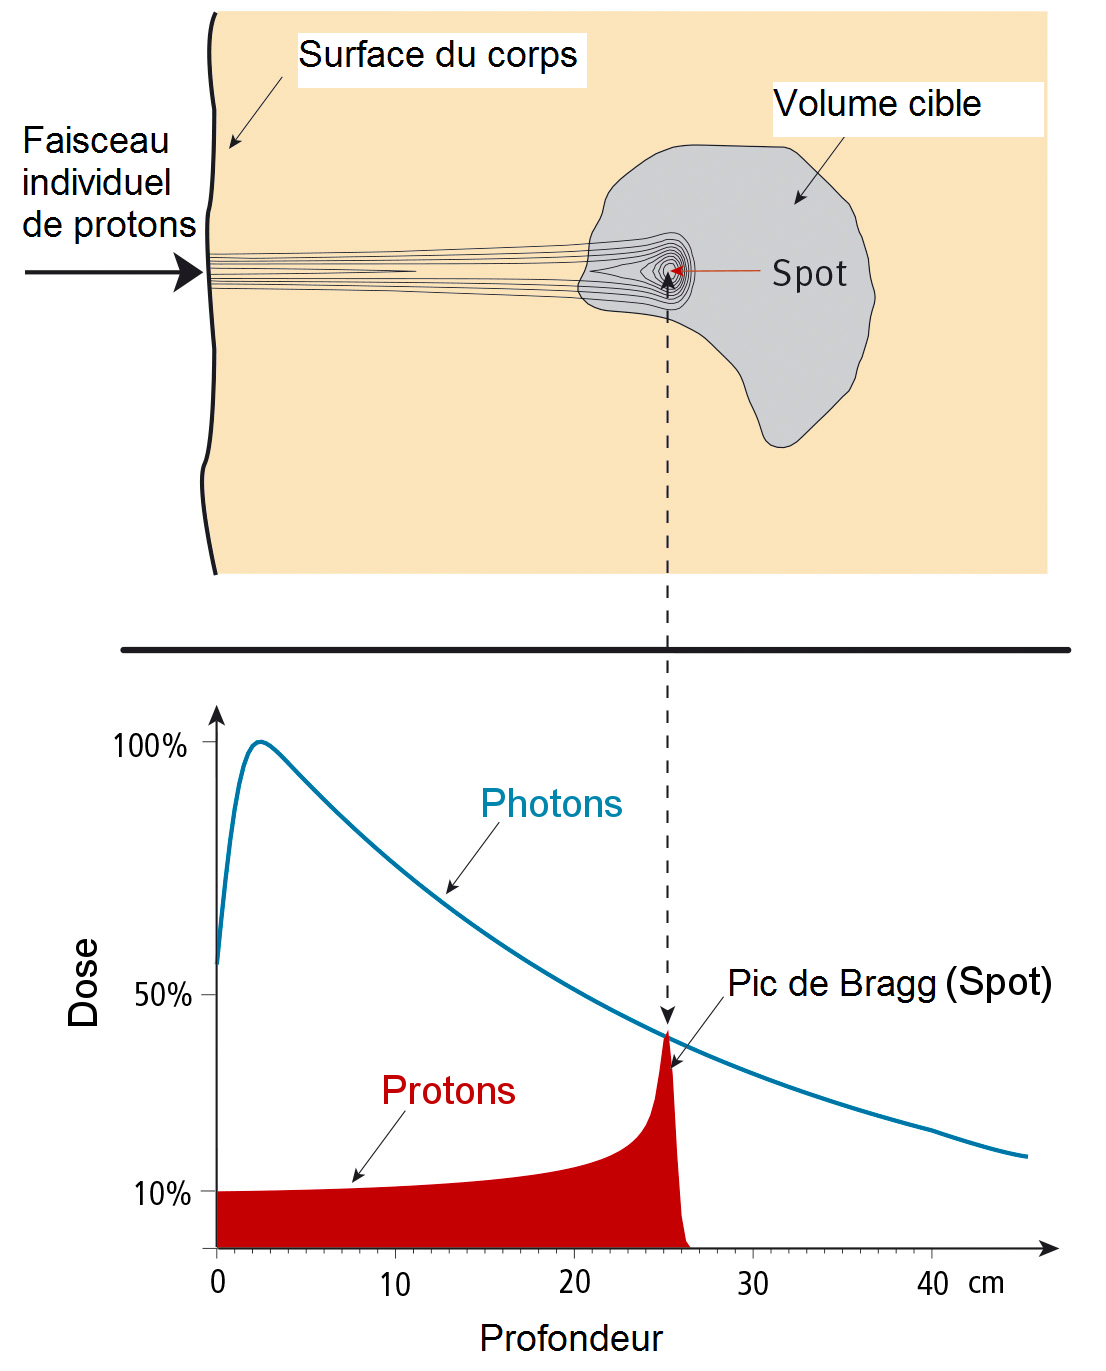 Dose de radiation d’un faisceau-crayon en fonction de sa pénétration dans l’organisme. La portée de ces protons est de 25 centimètres. En haut, la répartition de la dose sous forme de courbes de niveaux. En bas, les valeurs de la dose en fonction de la profondeur, comparées avec l’évolution d’une dose de photons.